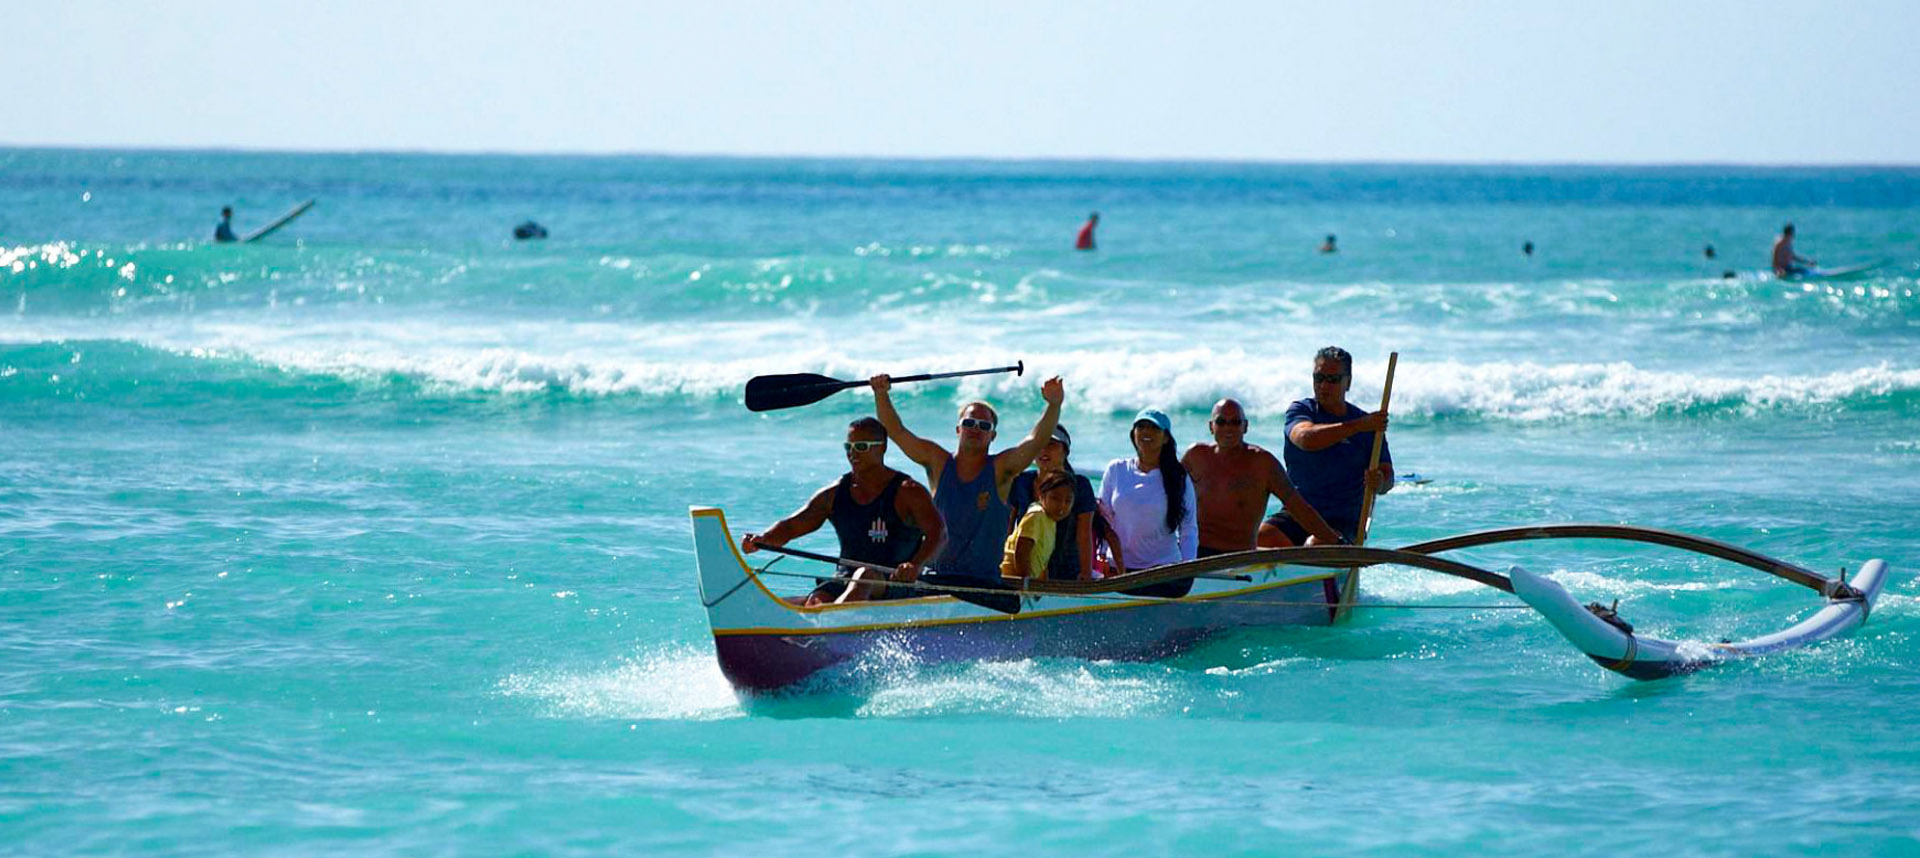 People in a canoe in the ocean